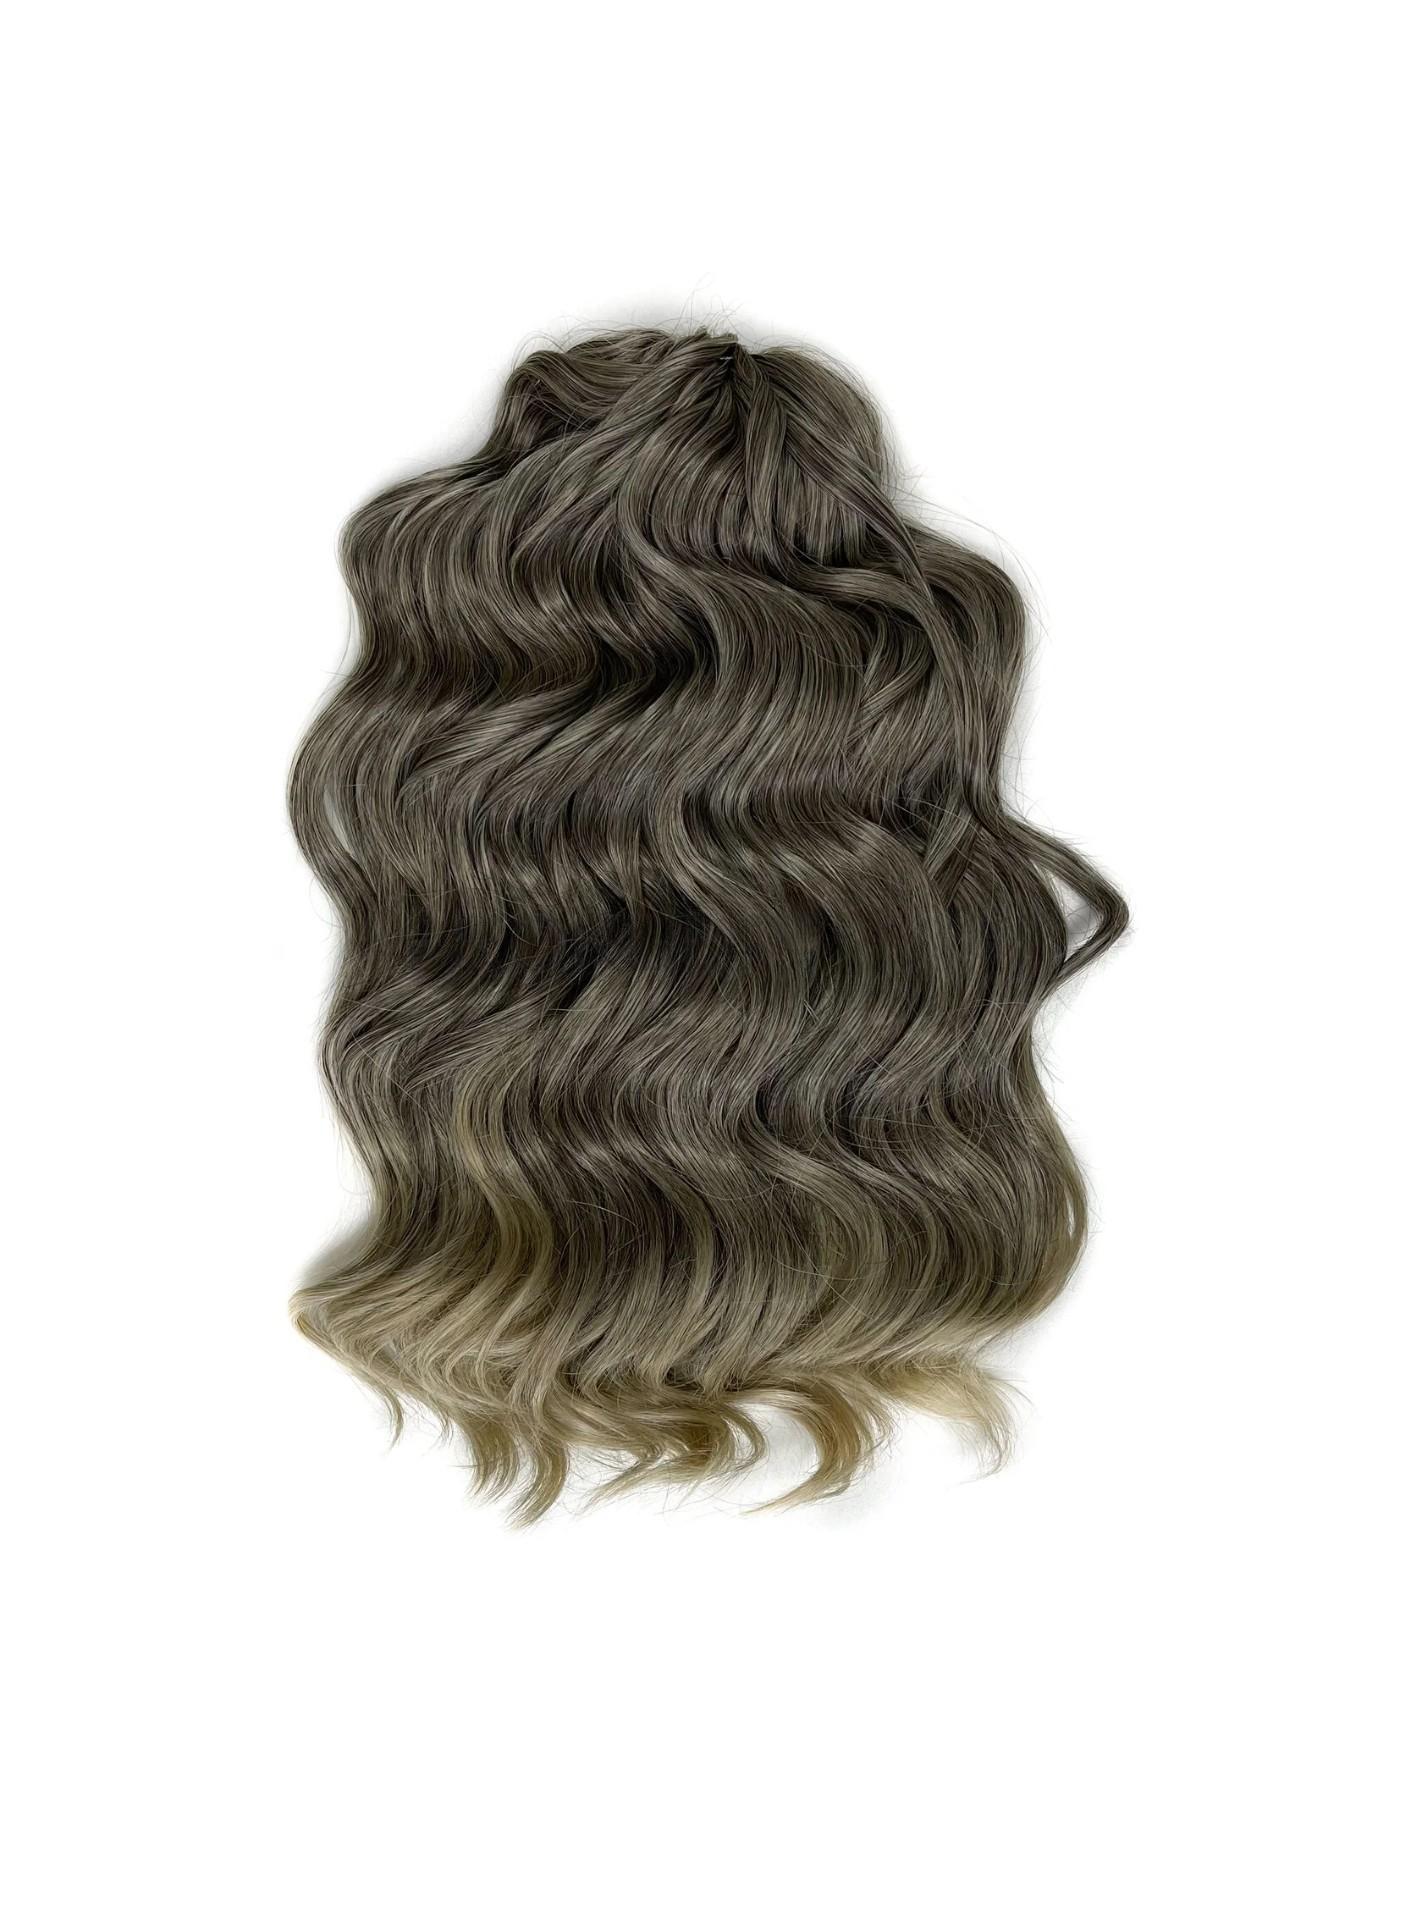 Афрокудри для плетения волос Anna Manasi T4 22 русый длина 40 вес 300г афрокудри для плетения волос ariel ариэль fire оранжевый длина 66см вес 300г